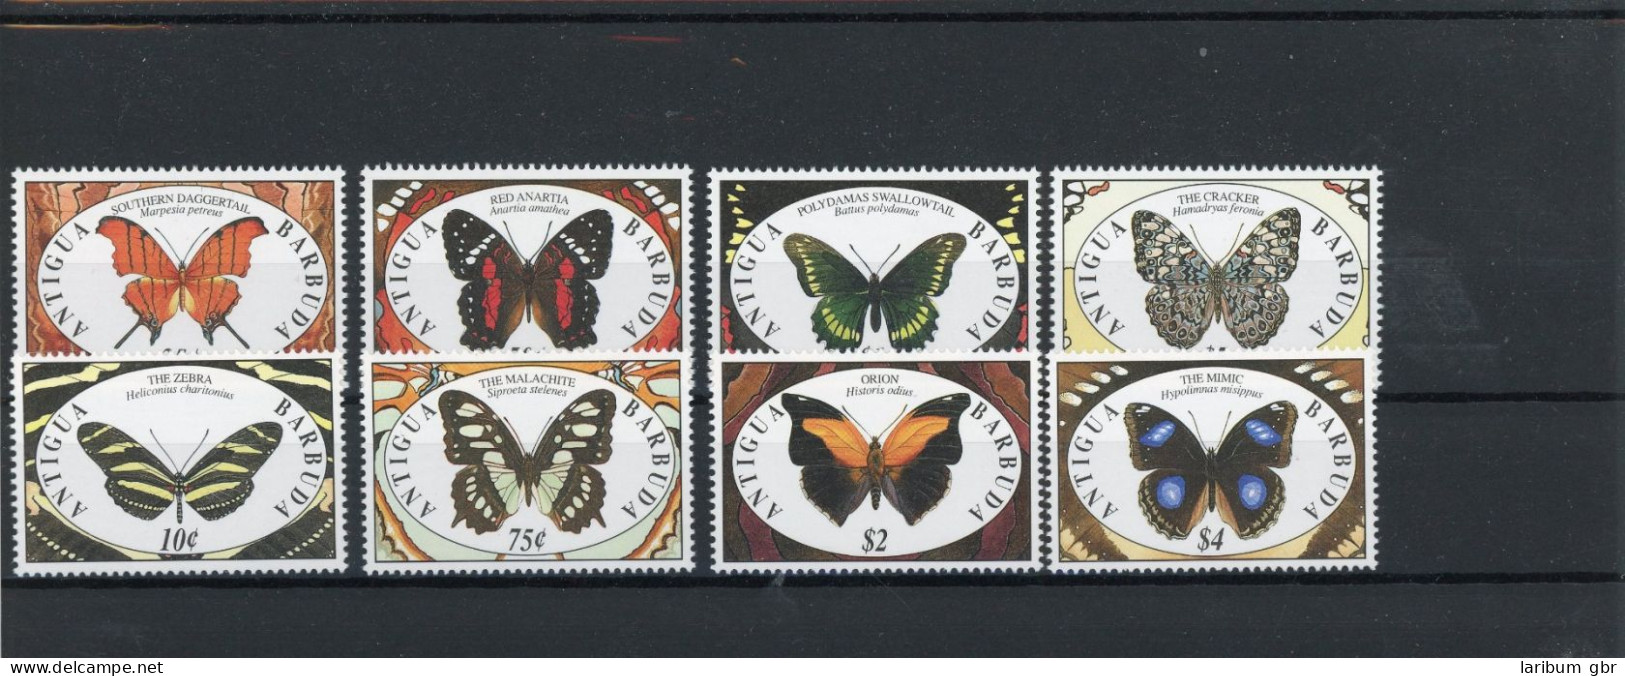 Antigua Und Barbuda 1475-1482 Postfrisch Schmetterlinge #JT992 - Antigua Et Barbuda (1981-...)